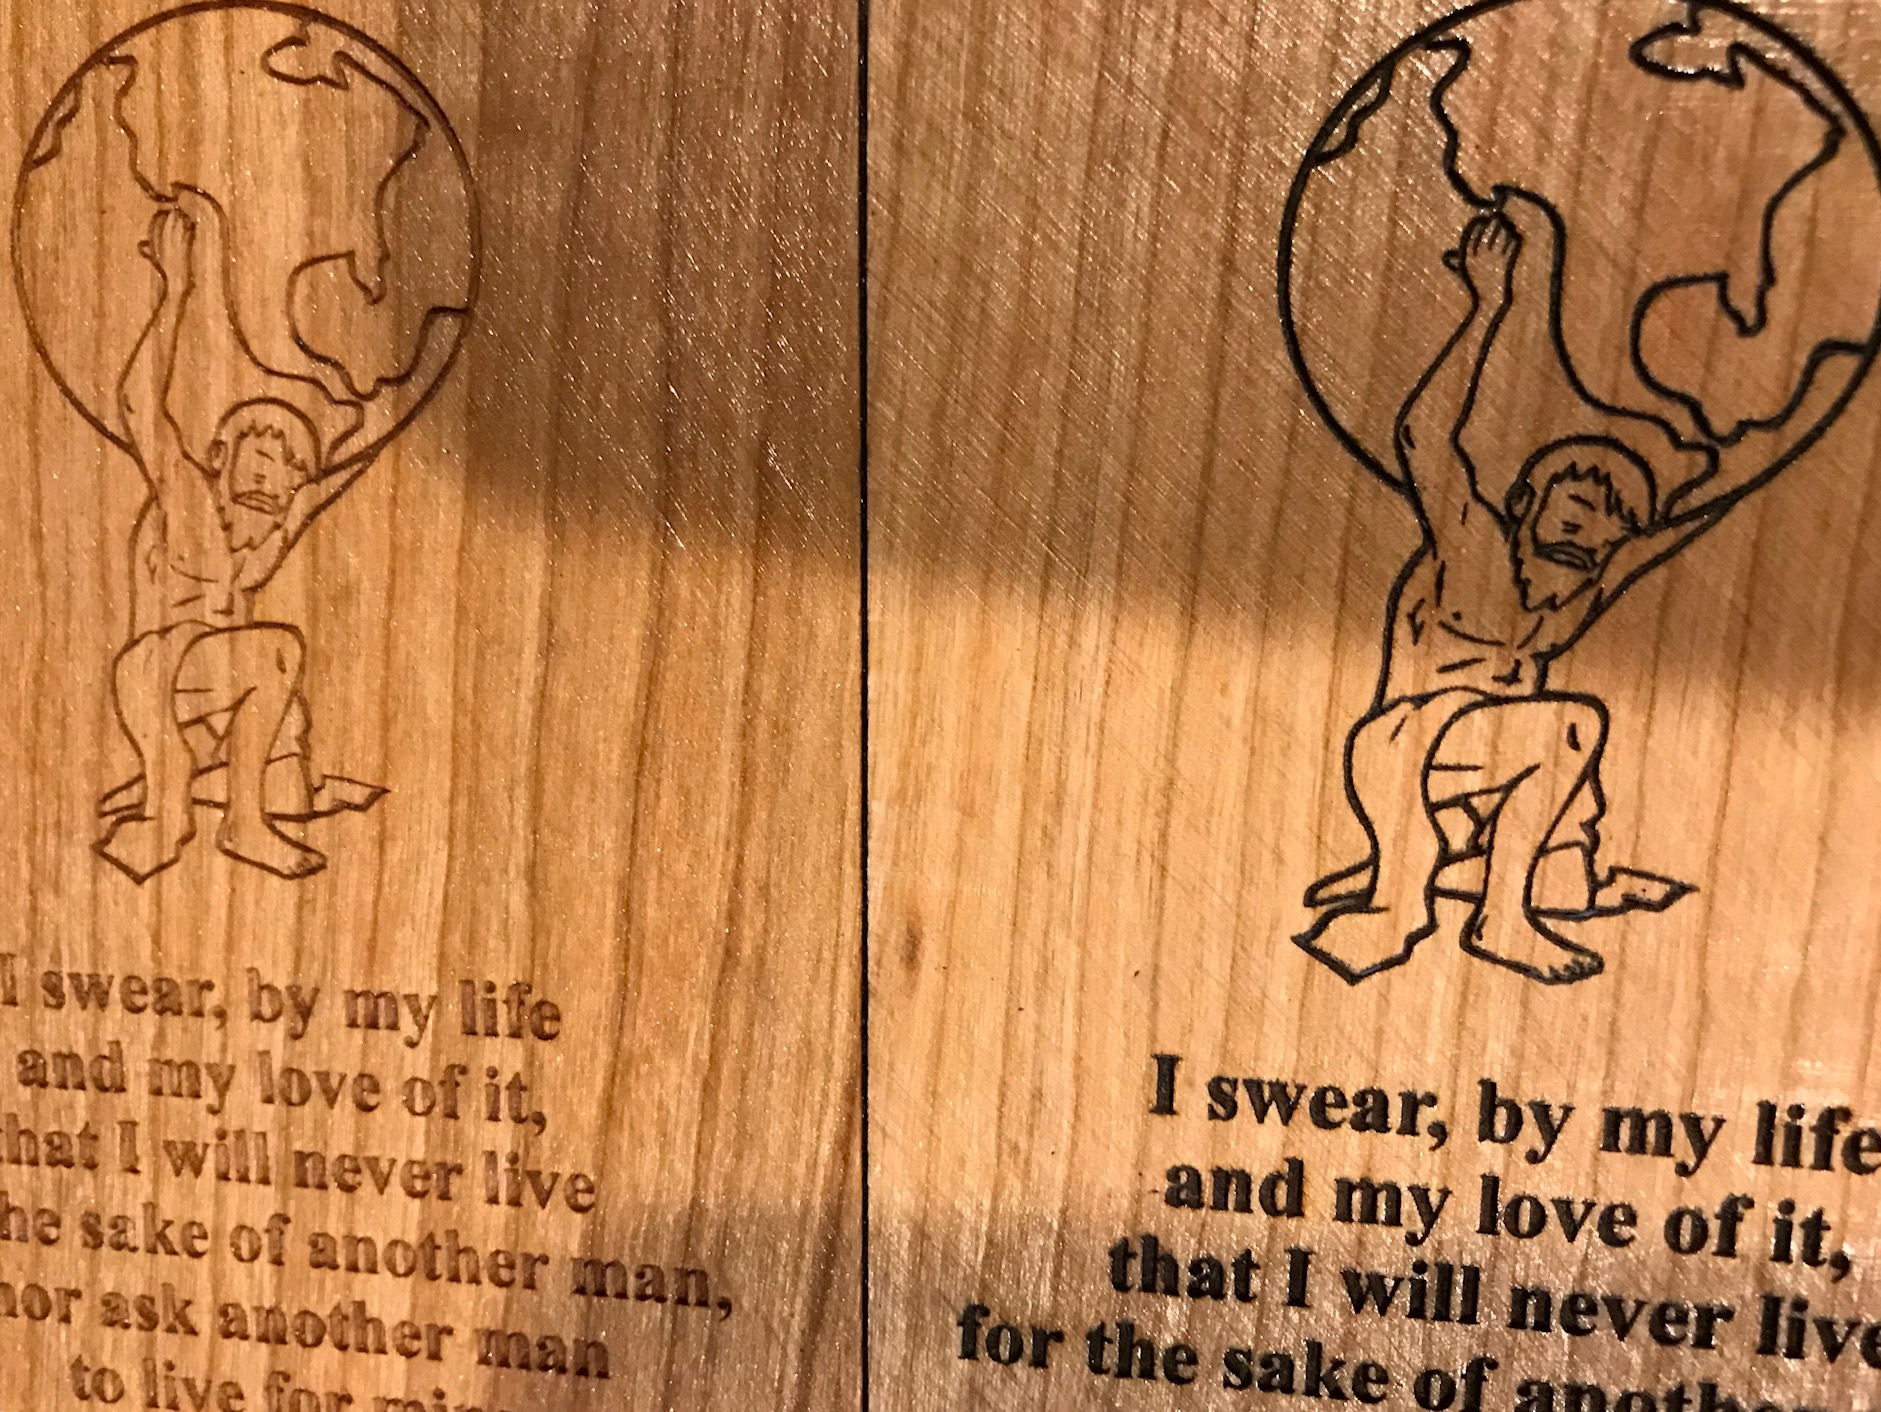 Engraving in wood carving